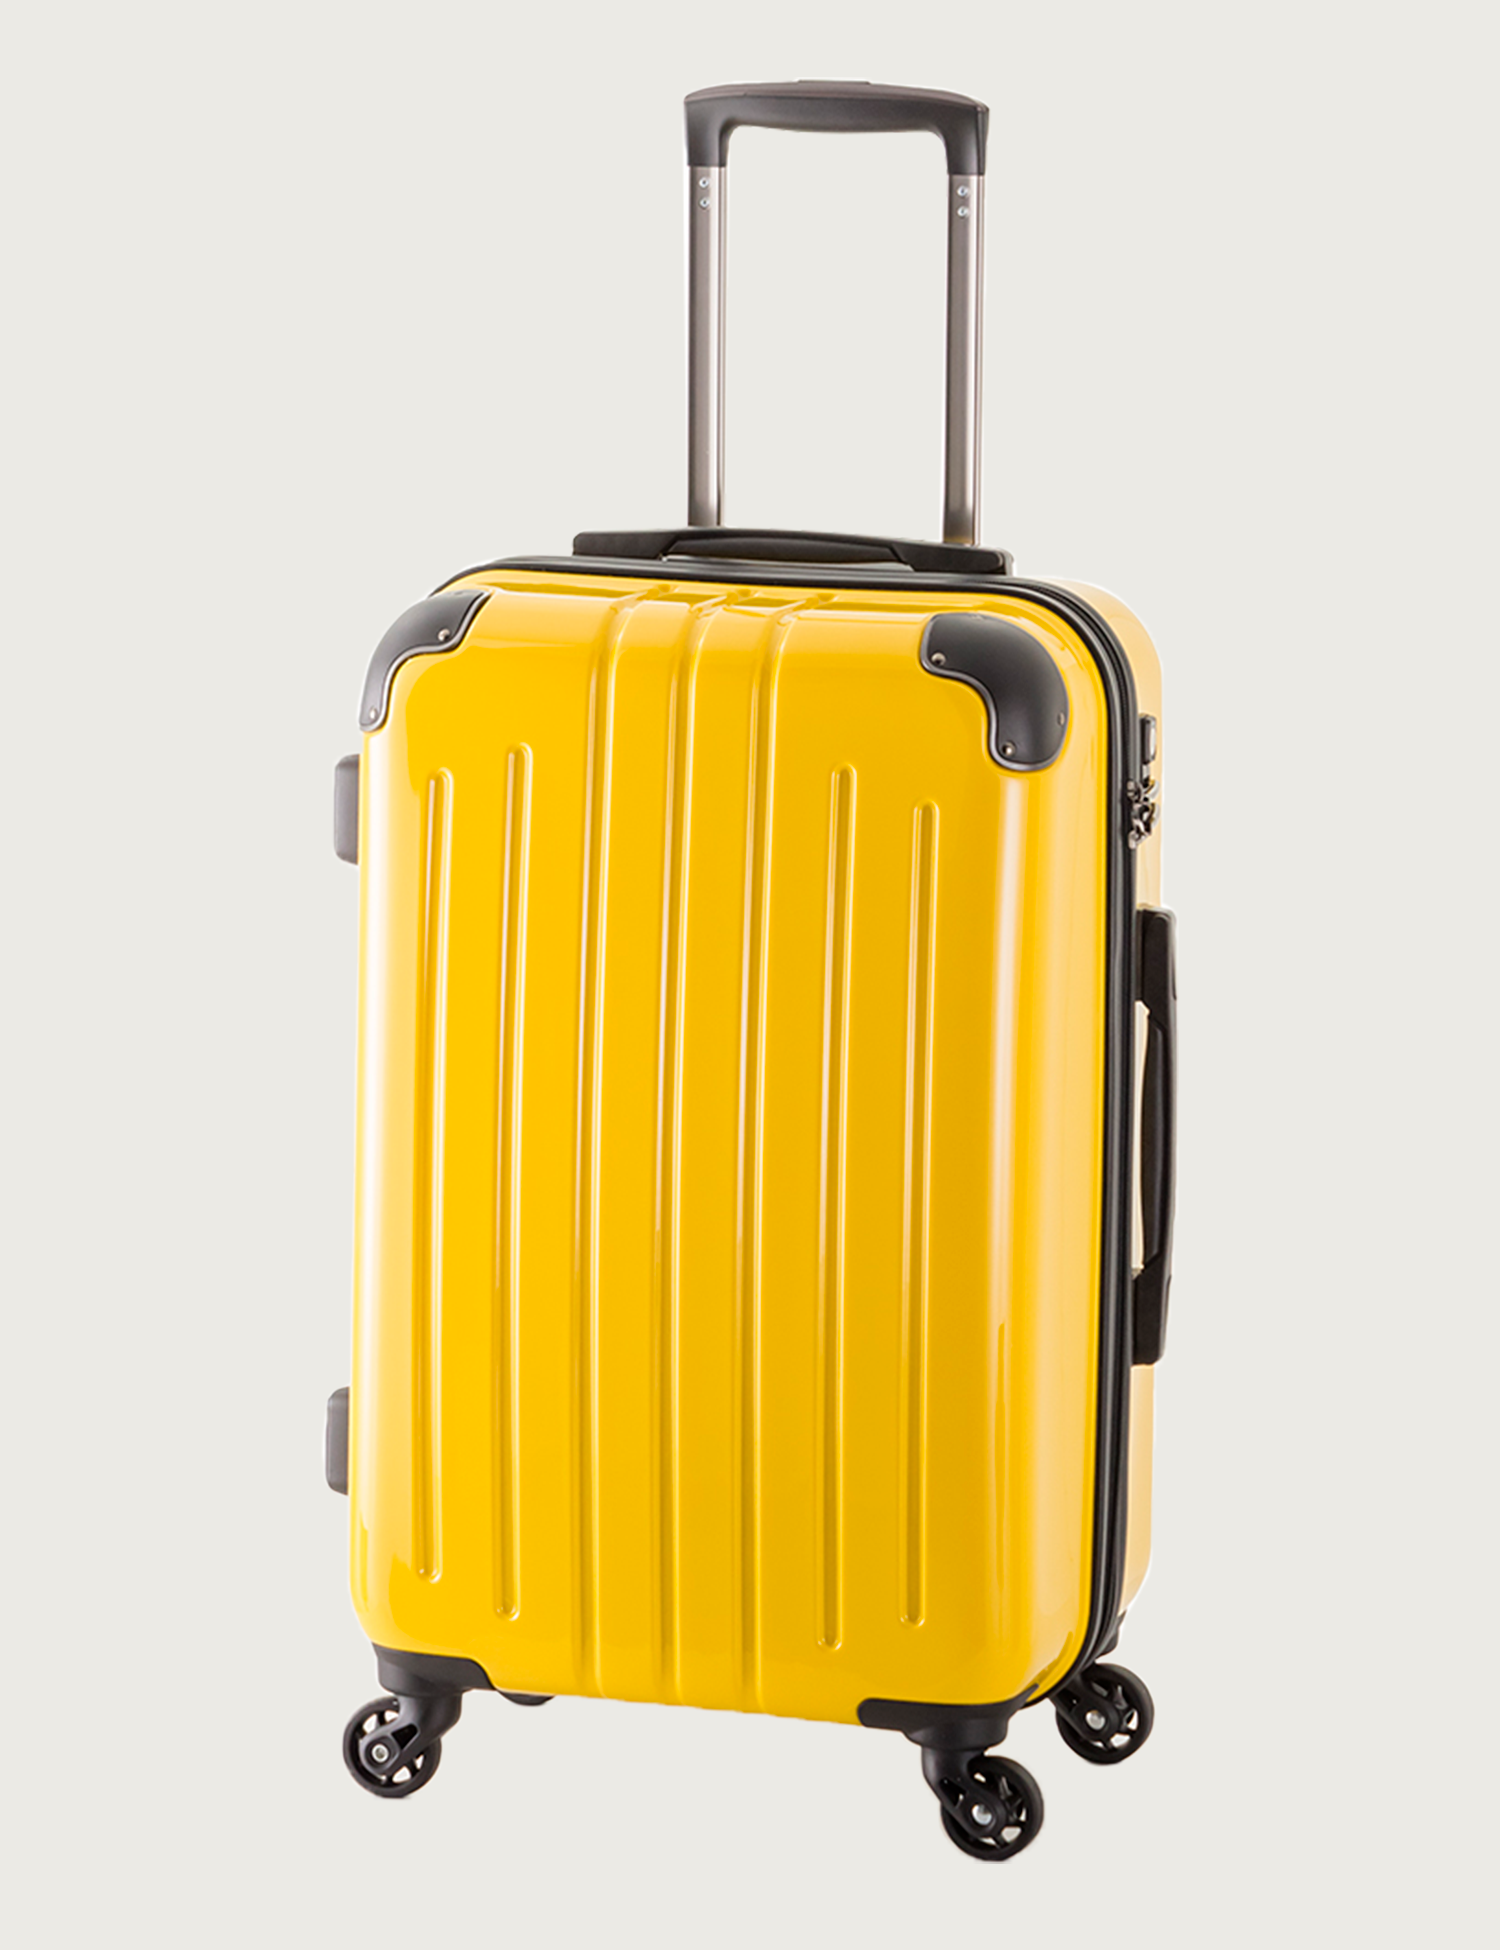 大特価 ジアテンツー2ハント スーツケース マイン ストッパー付き ジッパータイプ 48cm 33L 機内持込みサイズ フロントオープンタイプ  05744 機内持